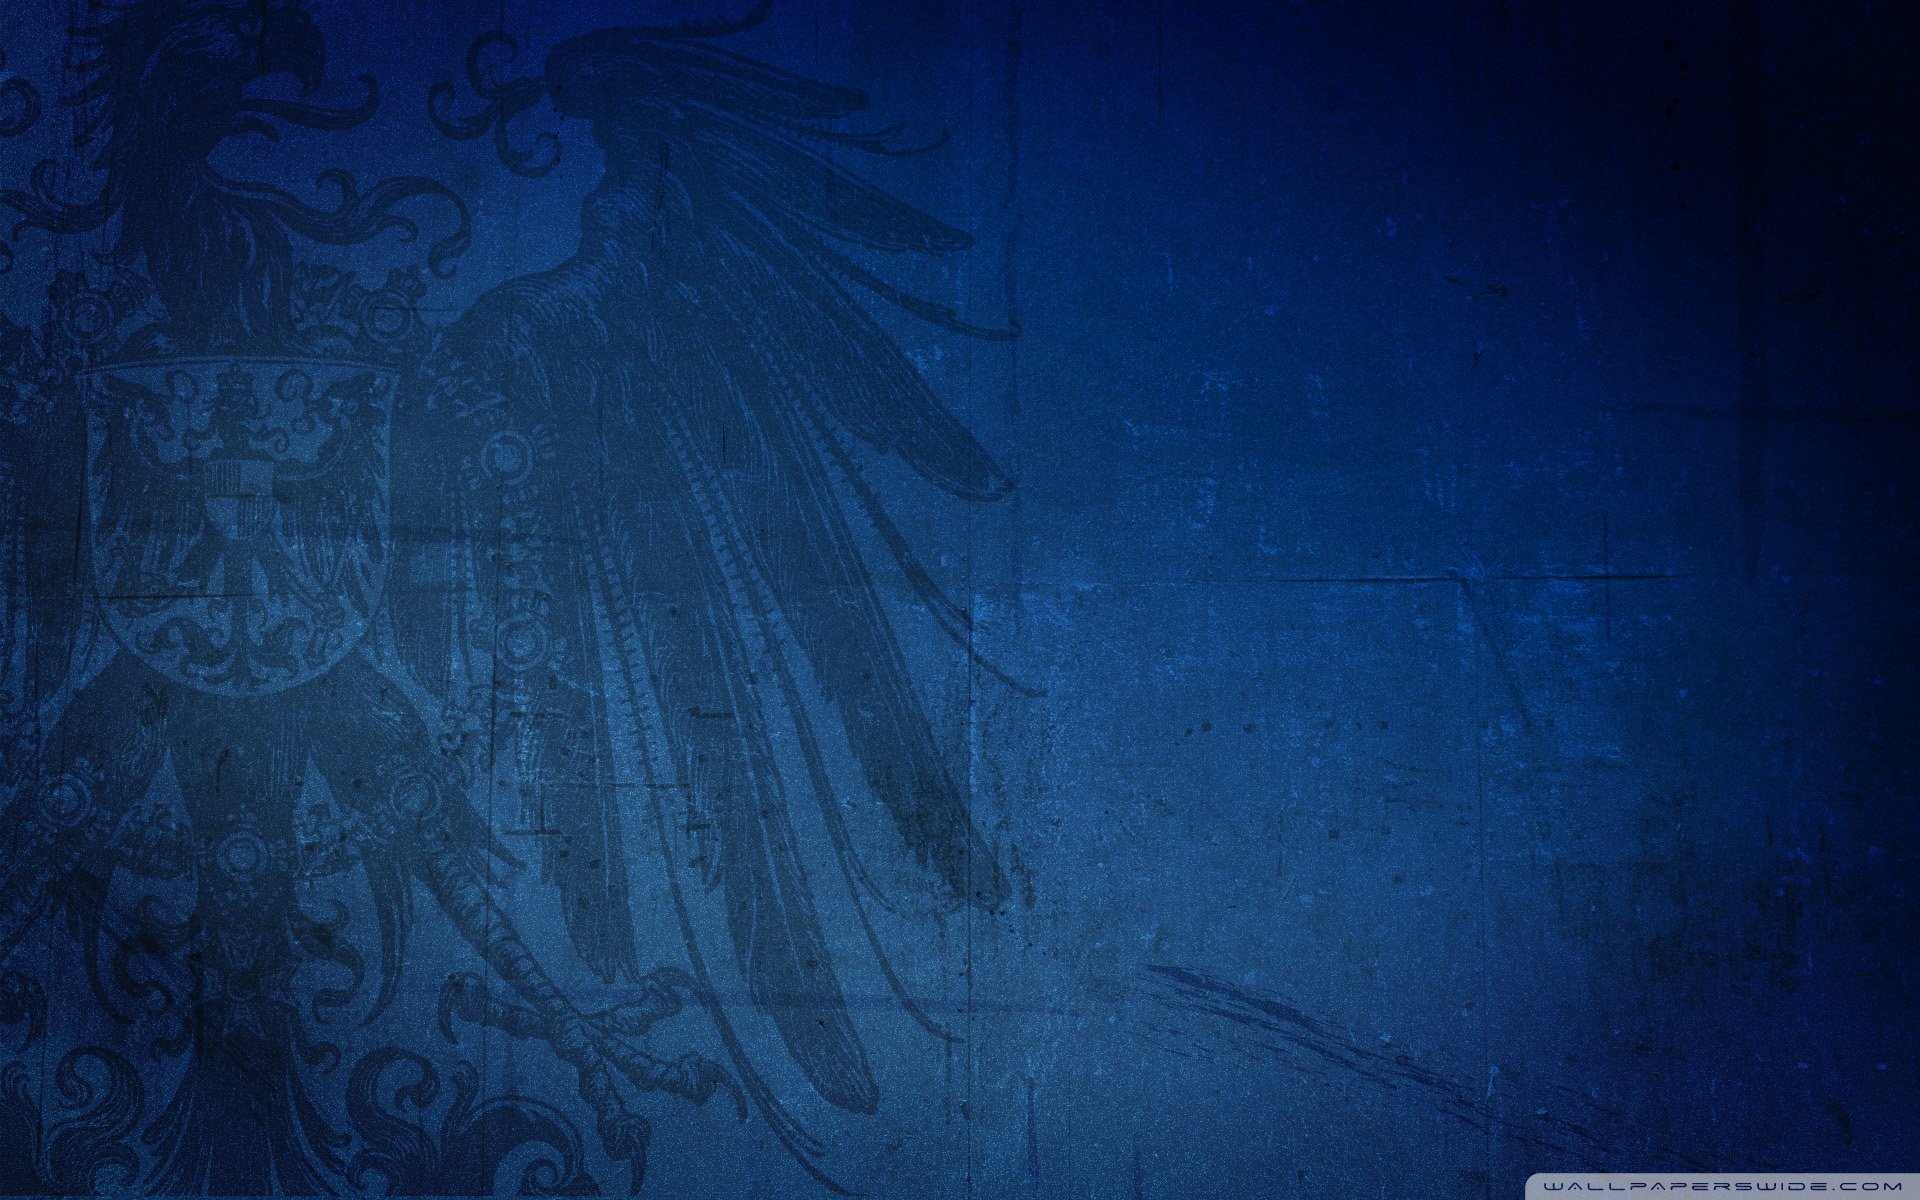 Blue Eagle Ultra HD Desktop Background Wallpaper for 4K UHD TV